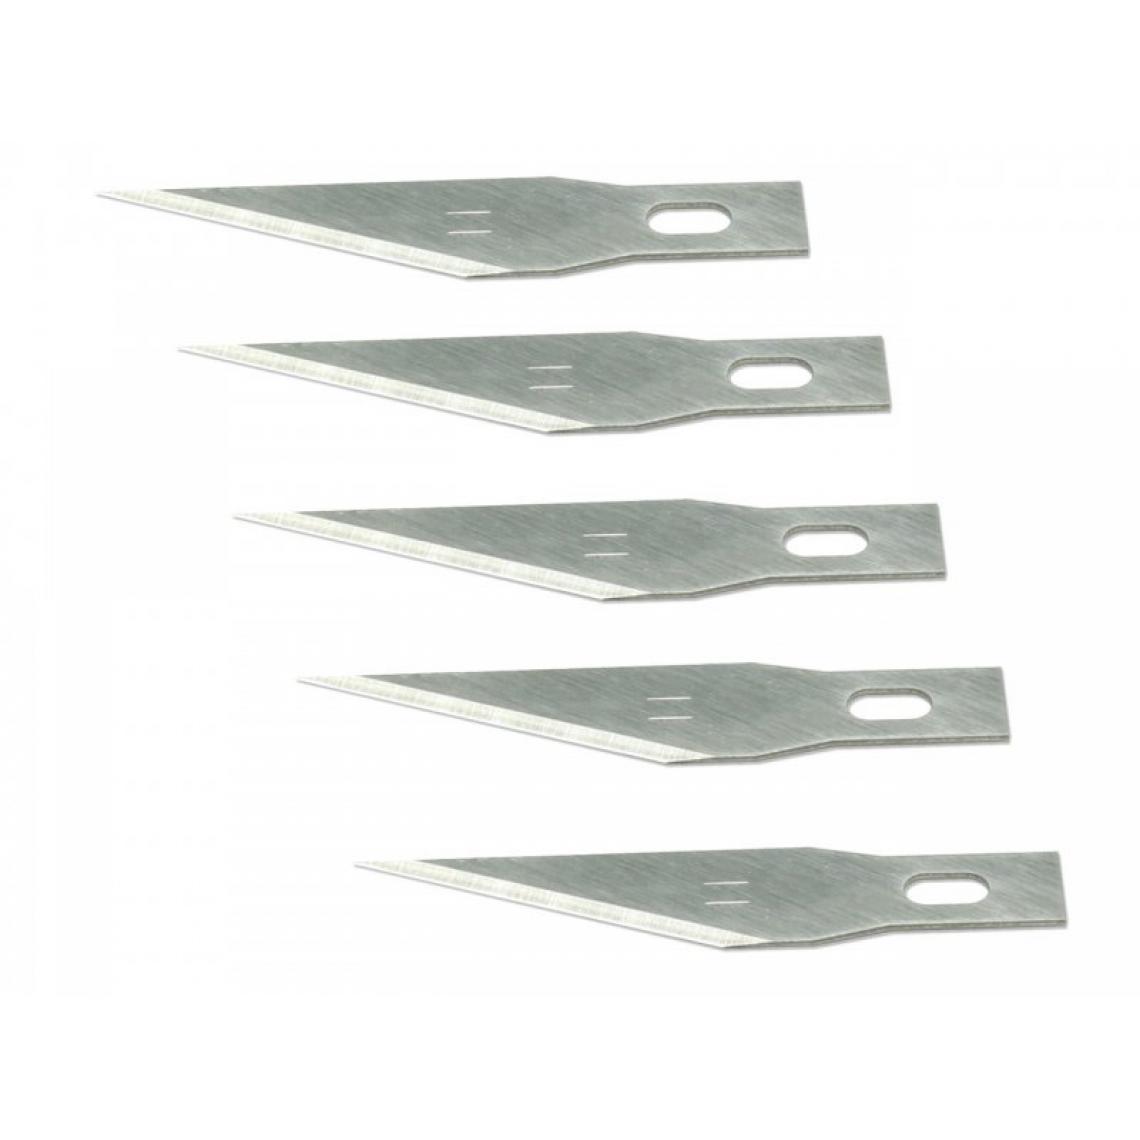 Pichler - Lames de rechange couteau #1 / #11 (5pcs) - Pichler - Accessoires et pièces